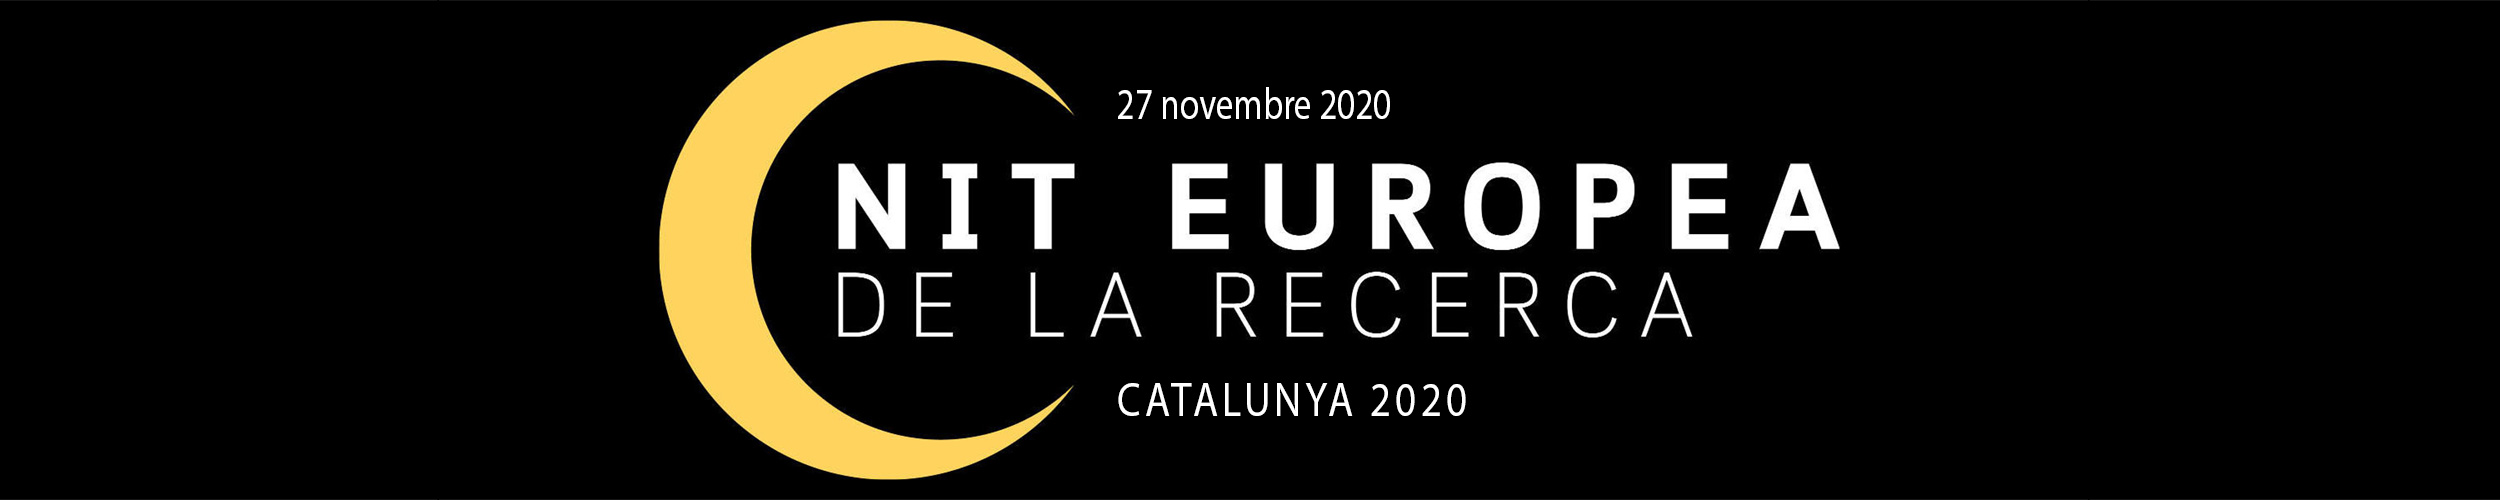 Nit-recerca-catalunya-novembre-2020